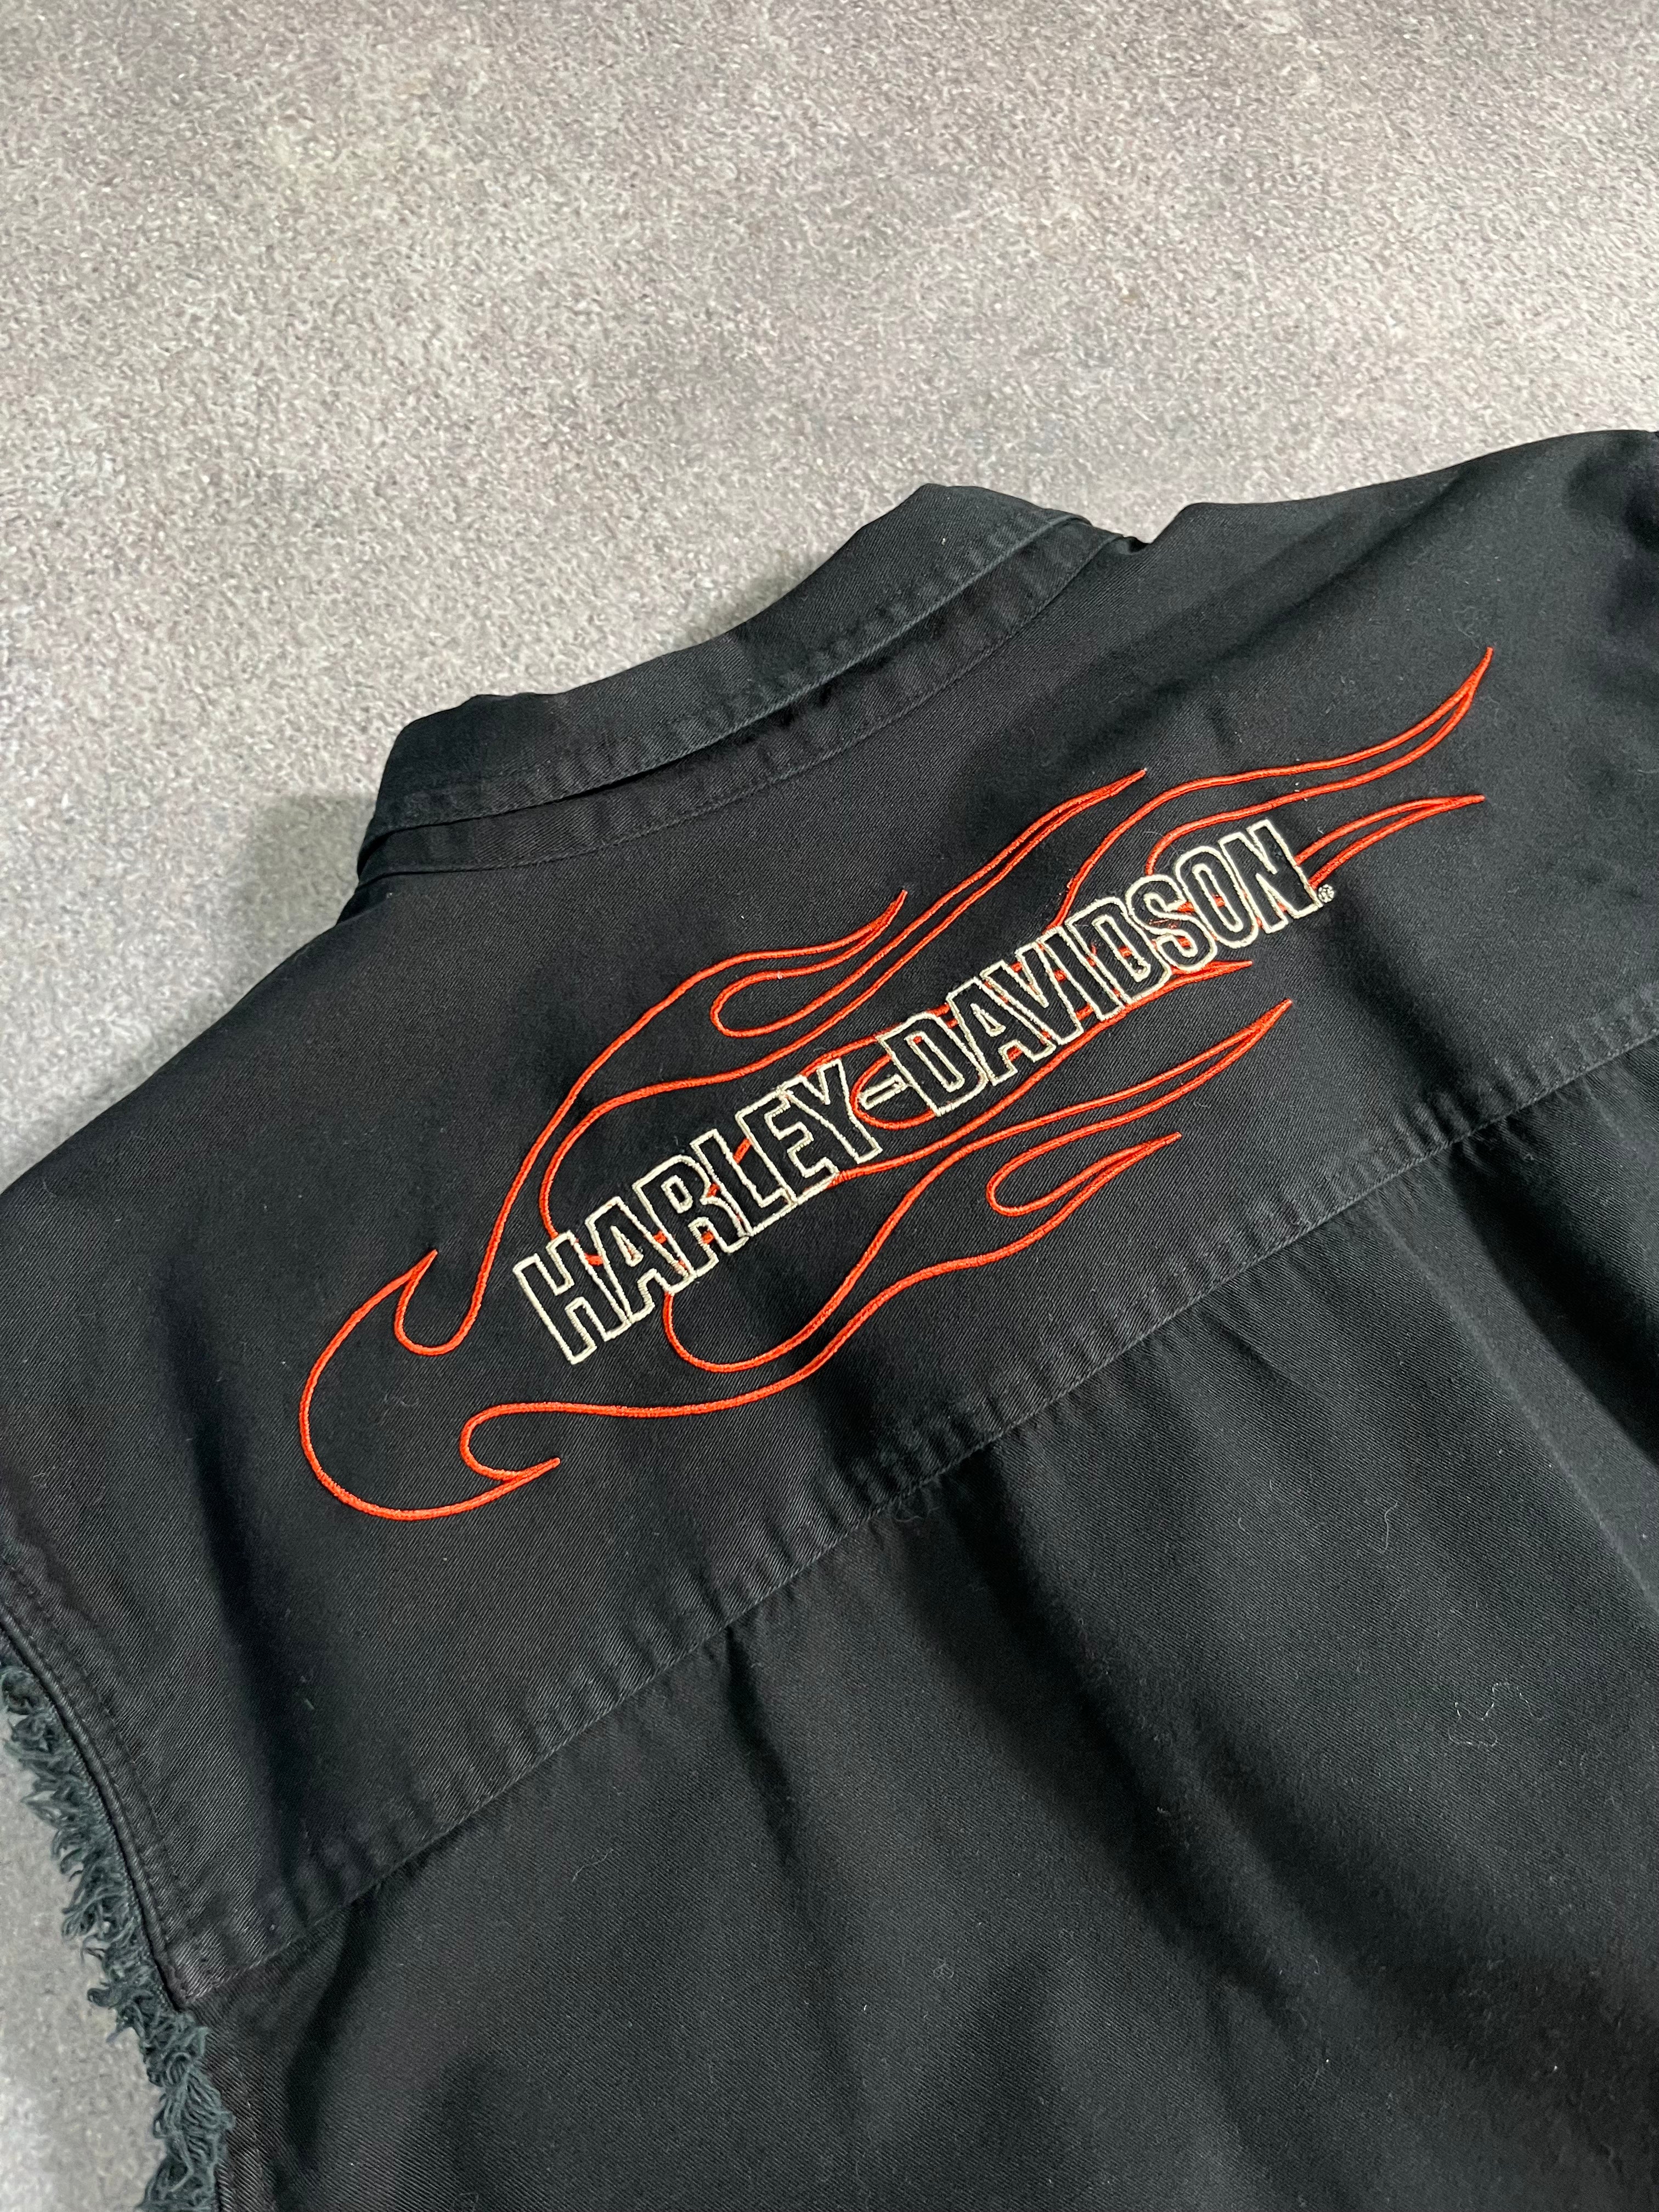 Vintage Harley Davidson Vest Black // X-Large - RHAGHOUSE VINTAGE